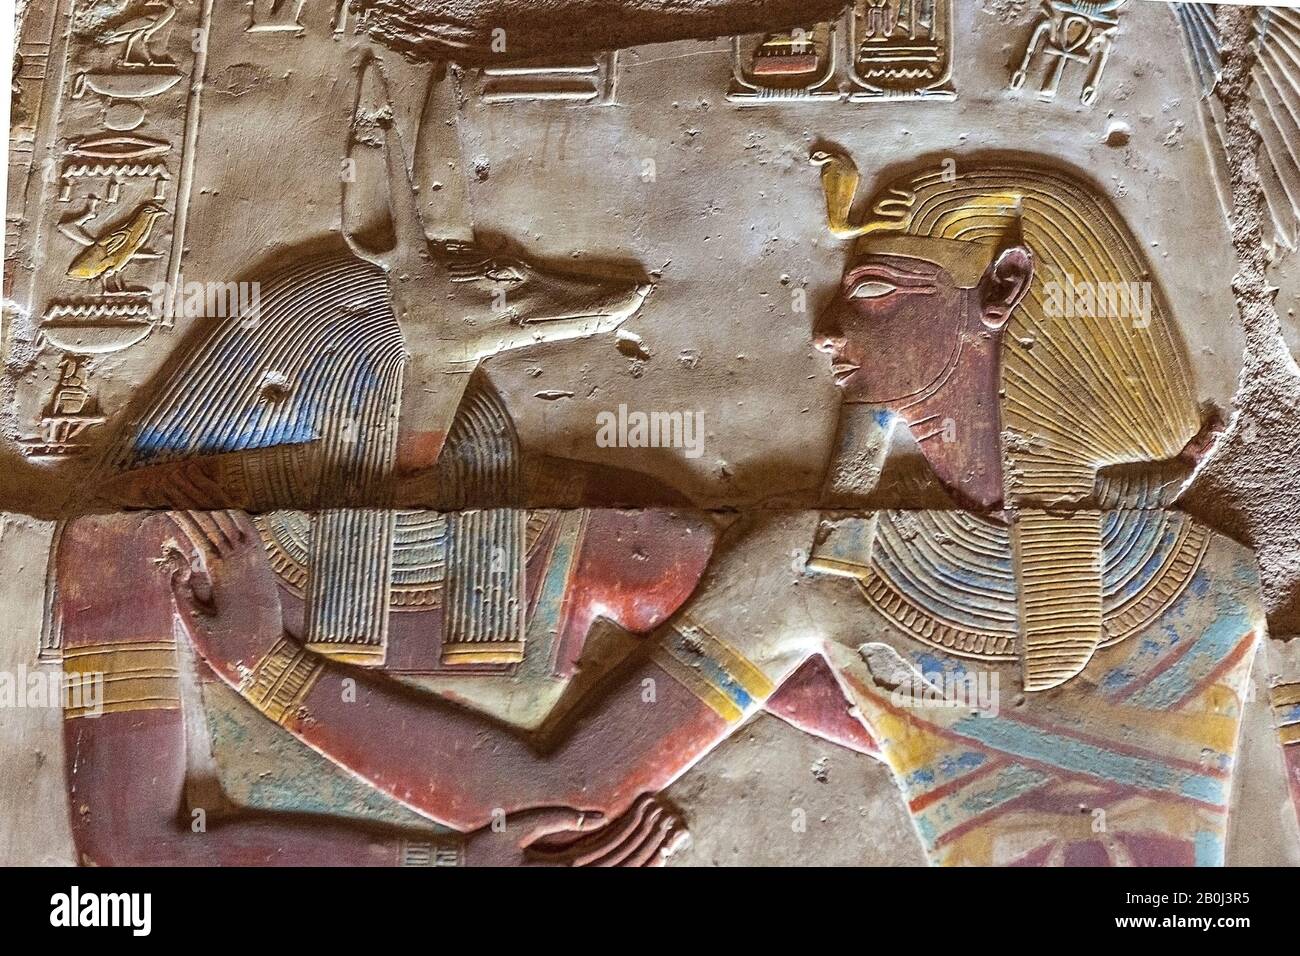 Wepwawet and Seti I, Abydos Stock Photo